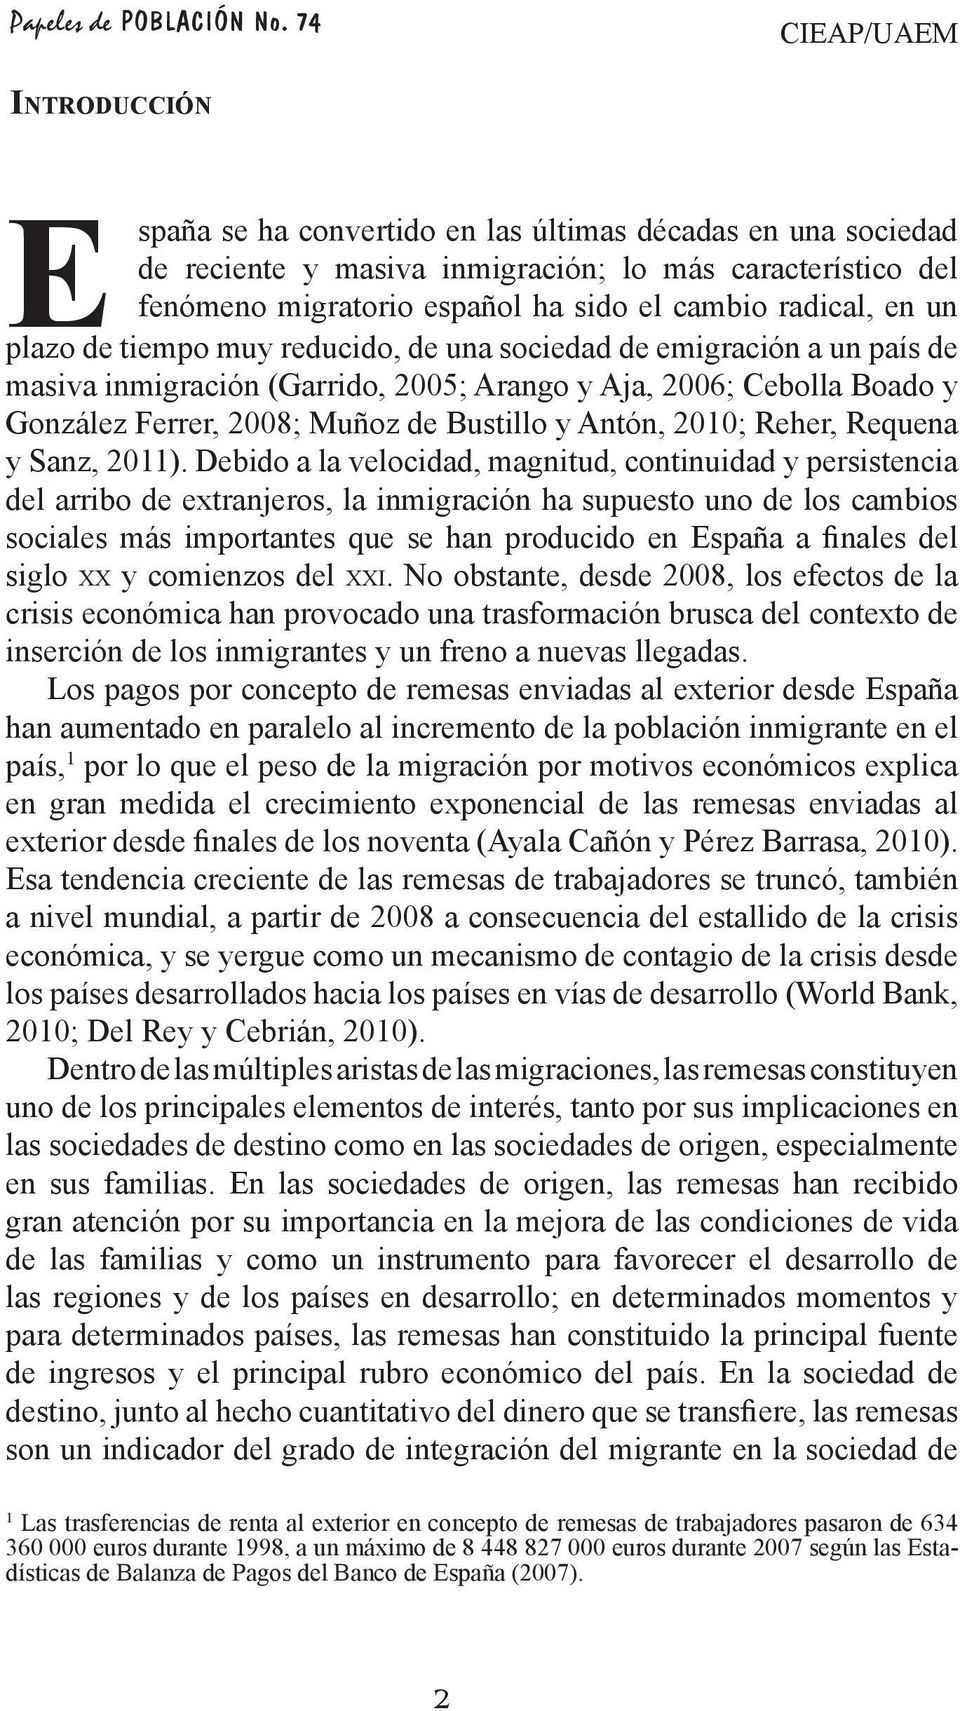 radical, en un plazo de tiempo muy reducido, de una sociedad de emigración a un país de masiva inmigración (Garrido, 2005; Arango y Aja, 2006; Cebolla Boado y González Ferrer, 2008; Muñoz de Bustillo